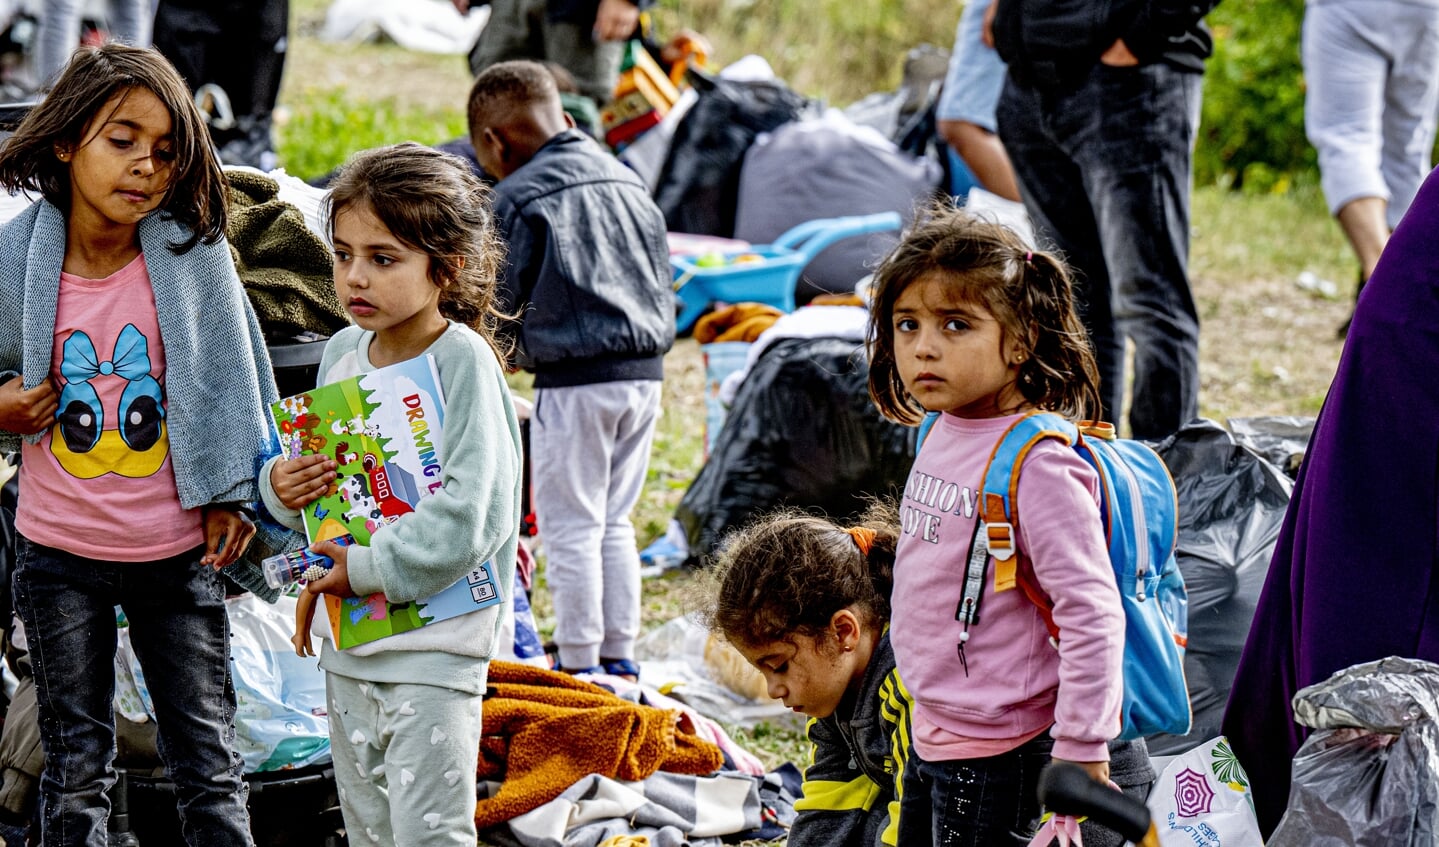 Ongeveer een op de drie vluchtelingen naar Europa is minderjarig. Geweld lijkt bijna onvermijdelijk voor deze groep kinderen en het wordt veroorzaakt doordat Fort Europa de deur dichthoudt.